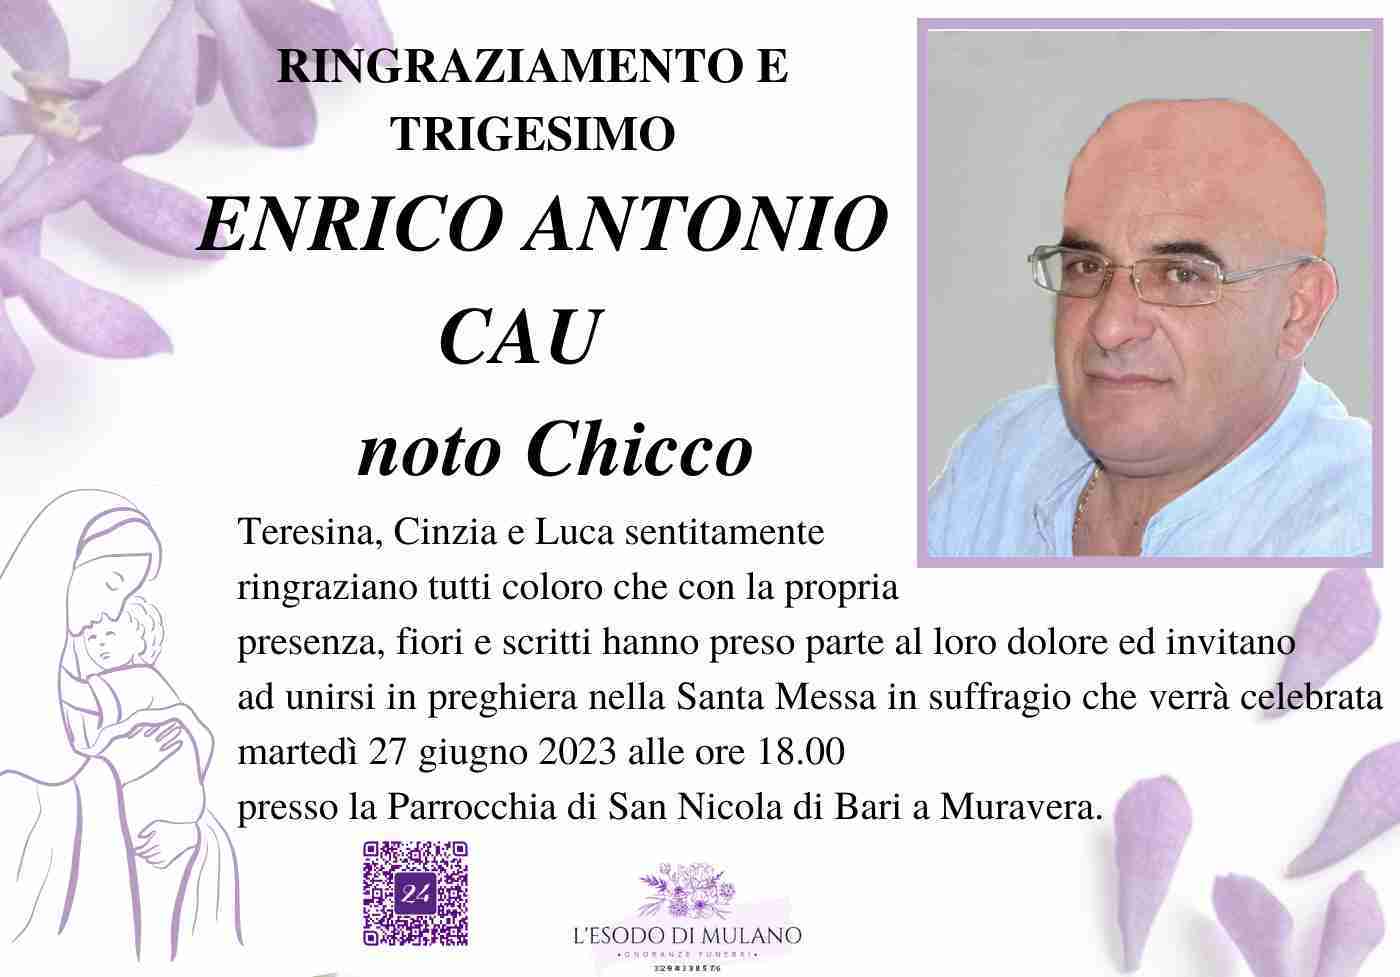 Enrico Antonio Cau